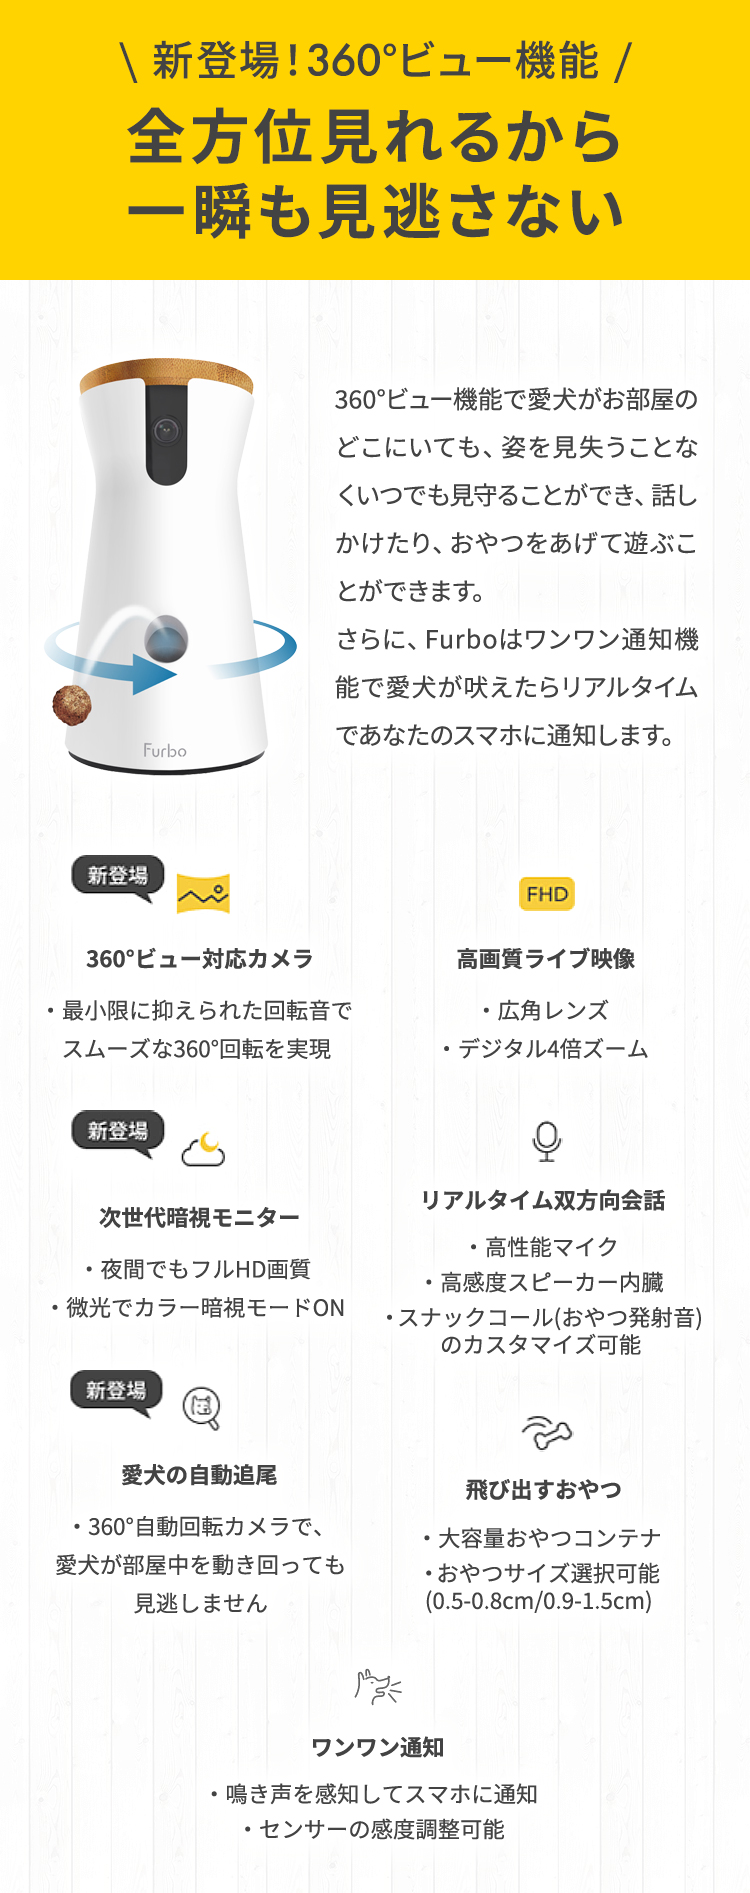 【楽天市場】【新型】Furboドッグカメラ - 360°ビュー[ファーボ] - AI搭載 wifi ペットカメラ ペット 見守りカメラ カメラ